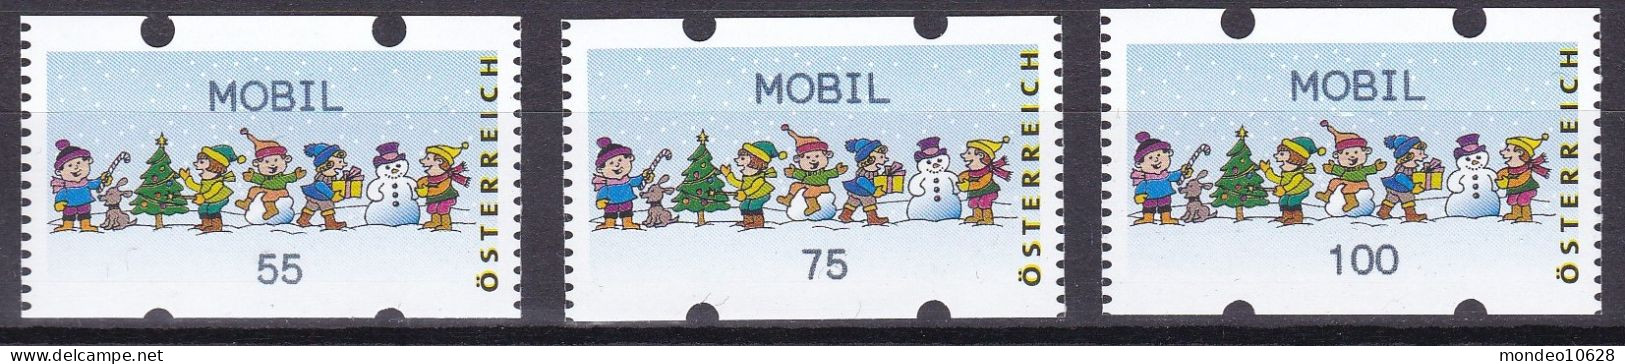 ATM Österreich - Ausgabe 24.11.2006 - Mobil - Kinder - Mit Zählnummern - Postfrisch (20) - Viñetas De Franqueo [ATM]